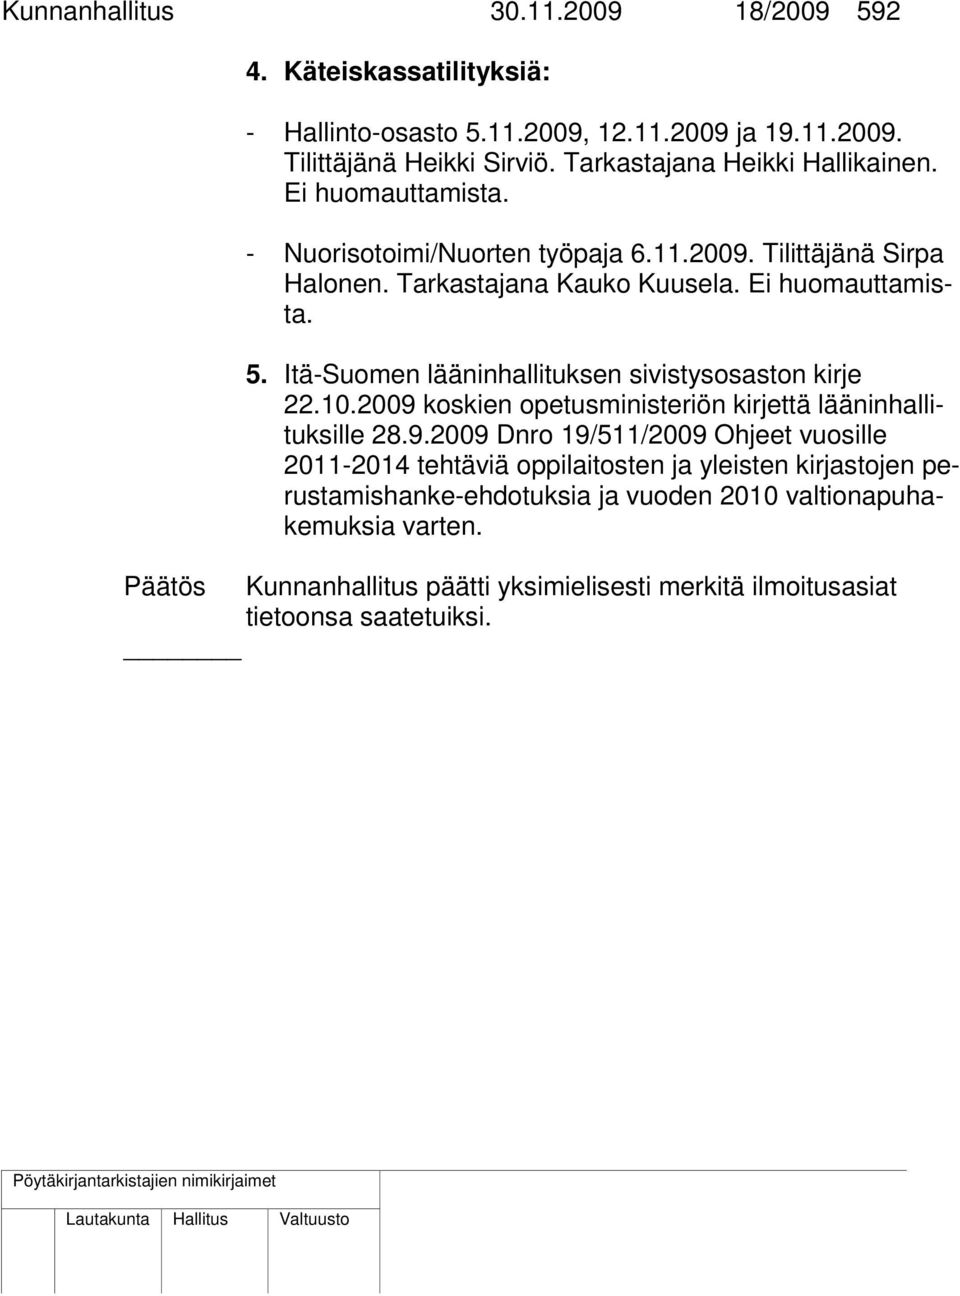 Itä-Suomen lääninhallituksen sivistysosaston kirje 22.10.2009 